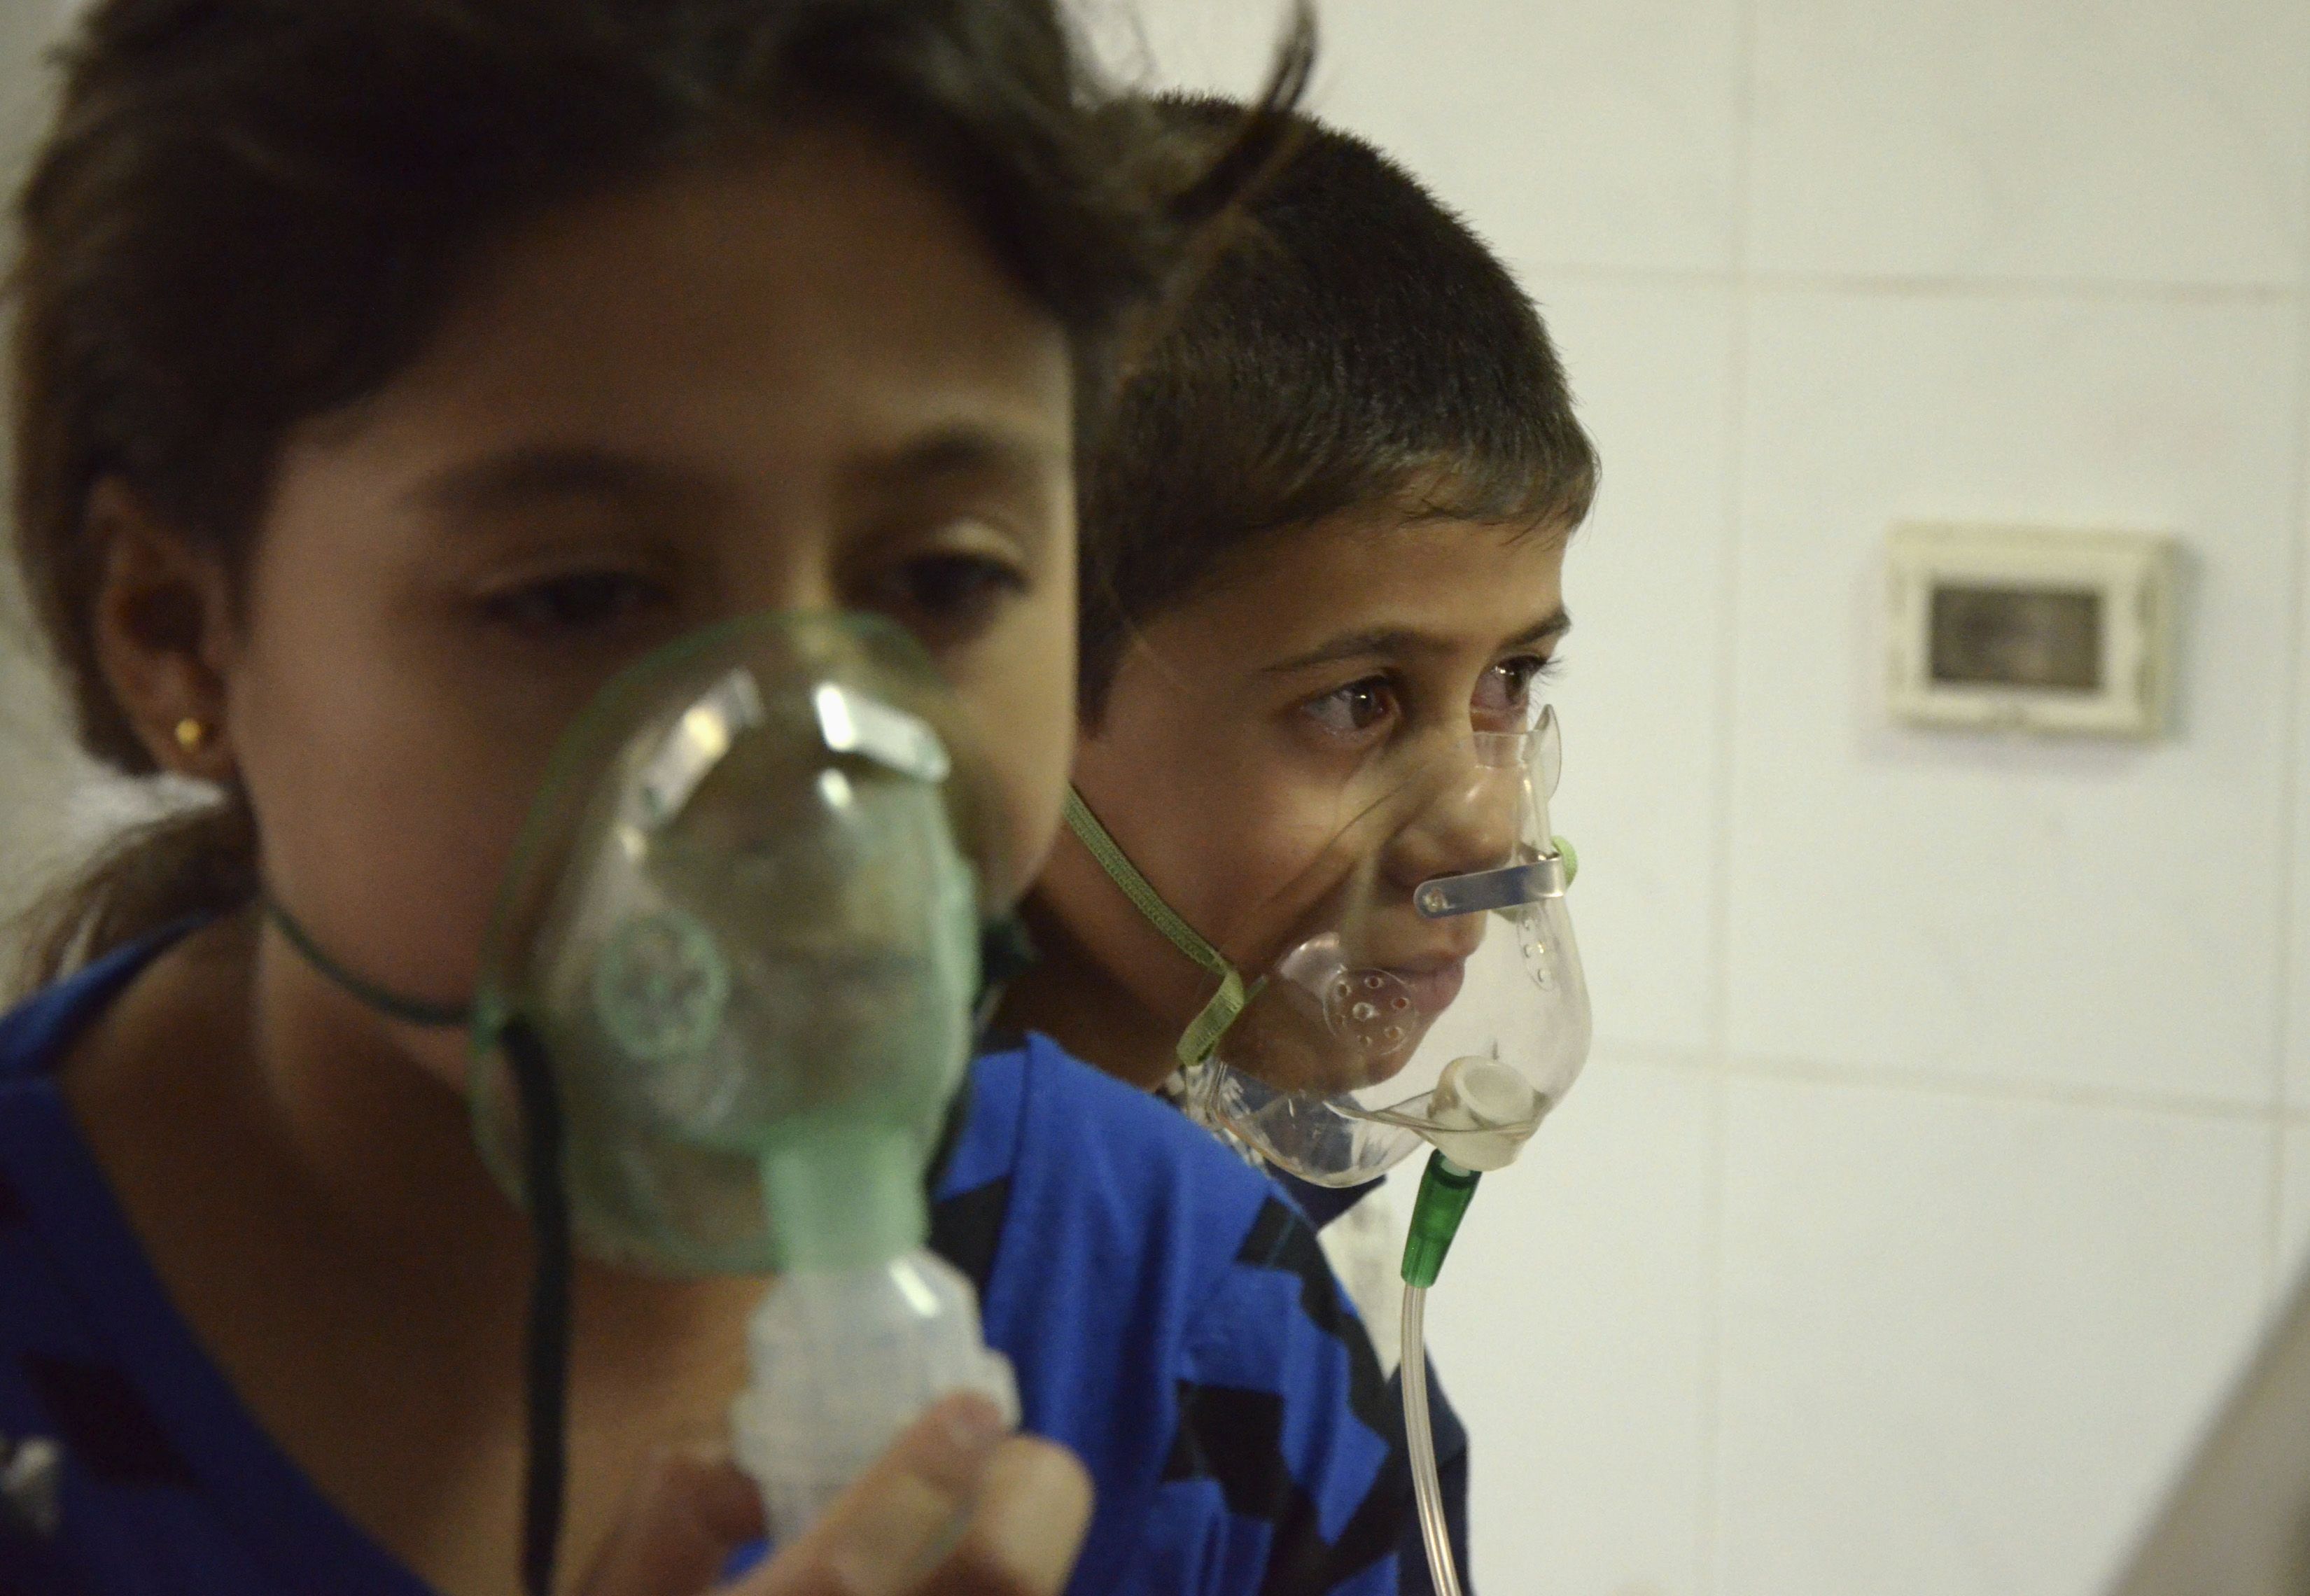 Usar armas químicas habría sido un suicidio político, dice fuente de seguridad siria